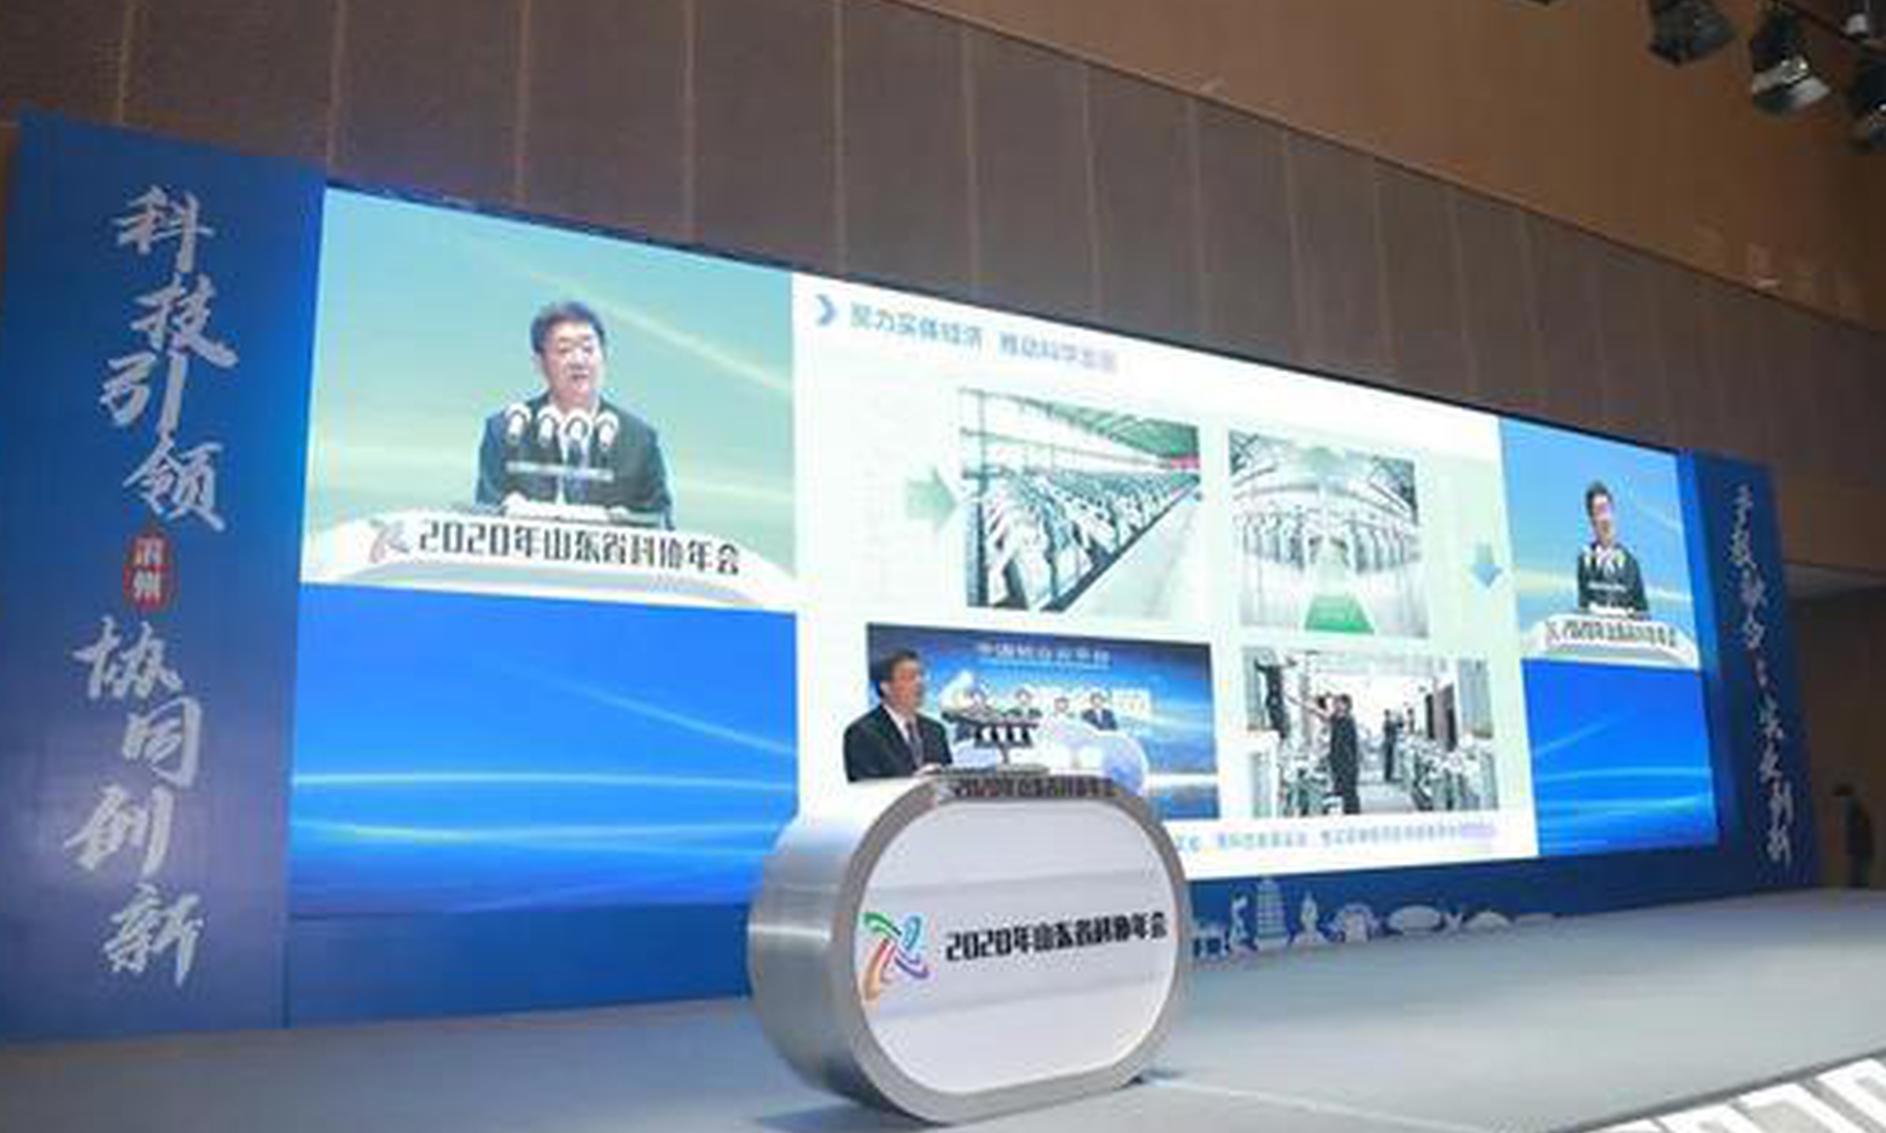 佘春明：营造滨州优势的最佳服务生态，让科技工作者创业更专注创新更简单
2020年11月27日 14:45 商讯 